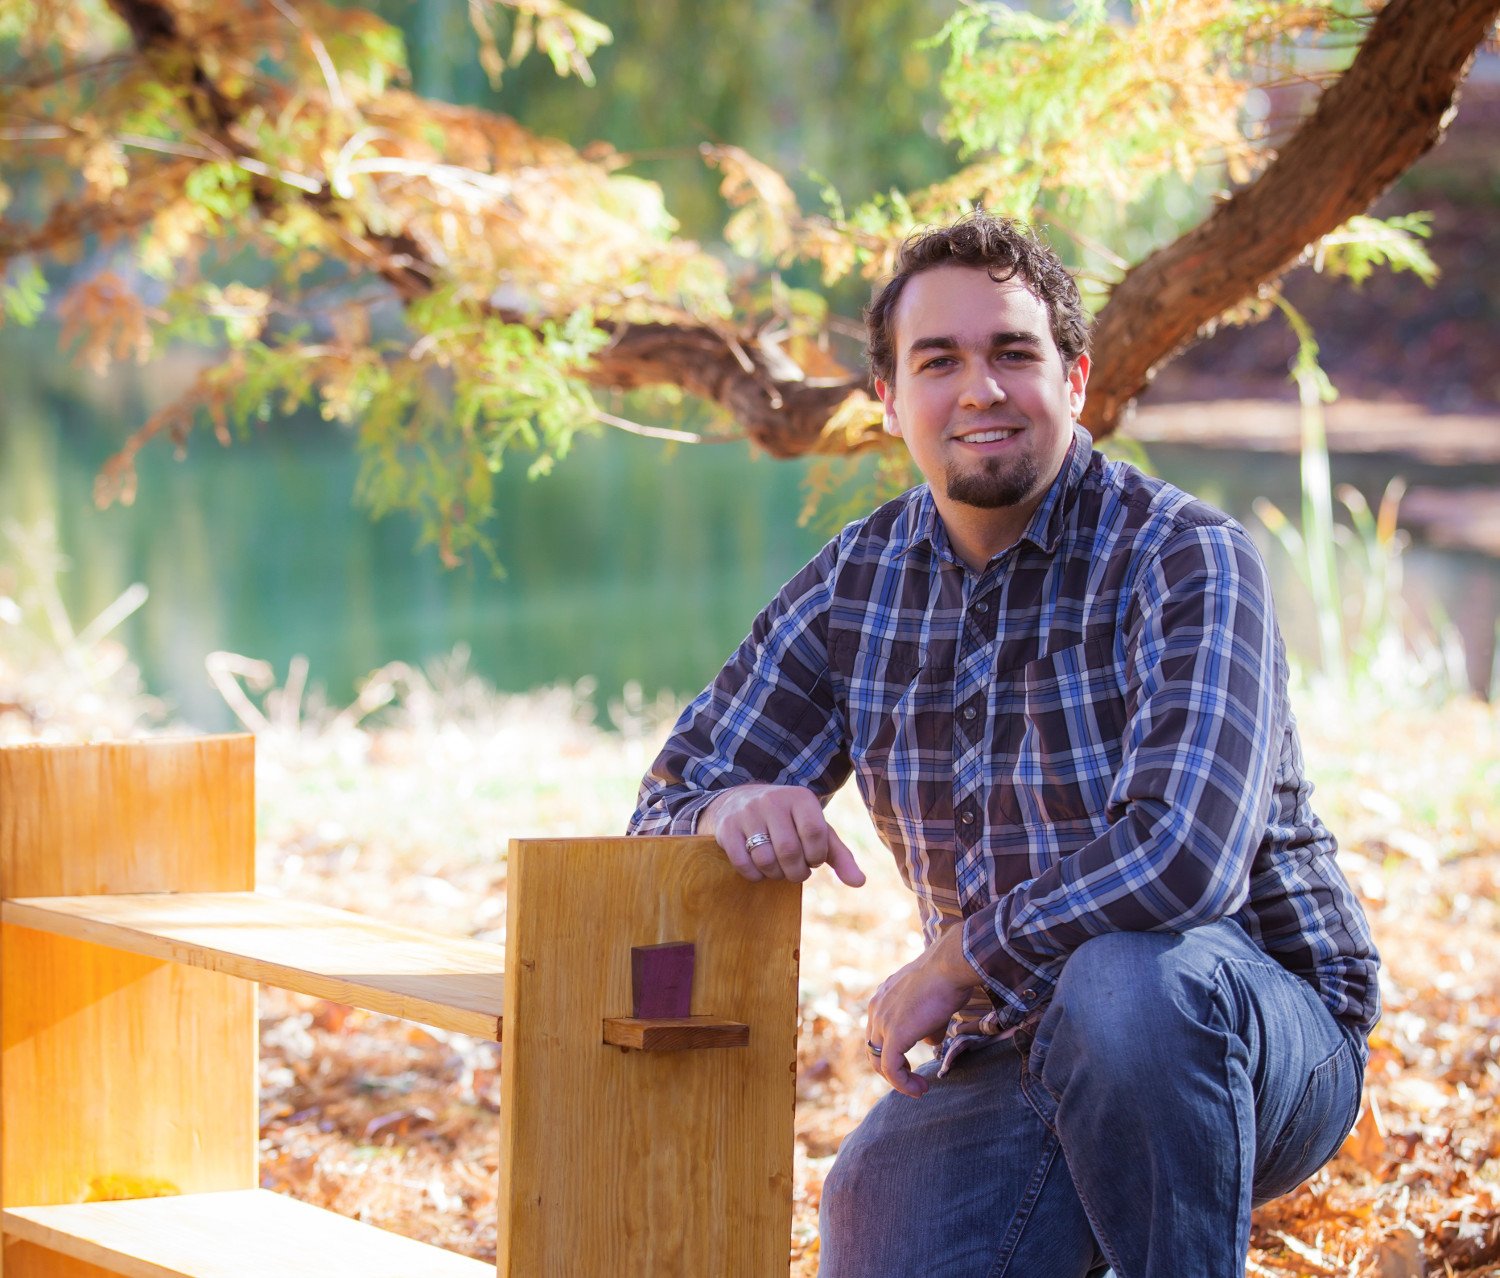 Dan Zehner enjoys woodworking and building custom furniture.